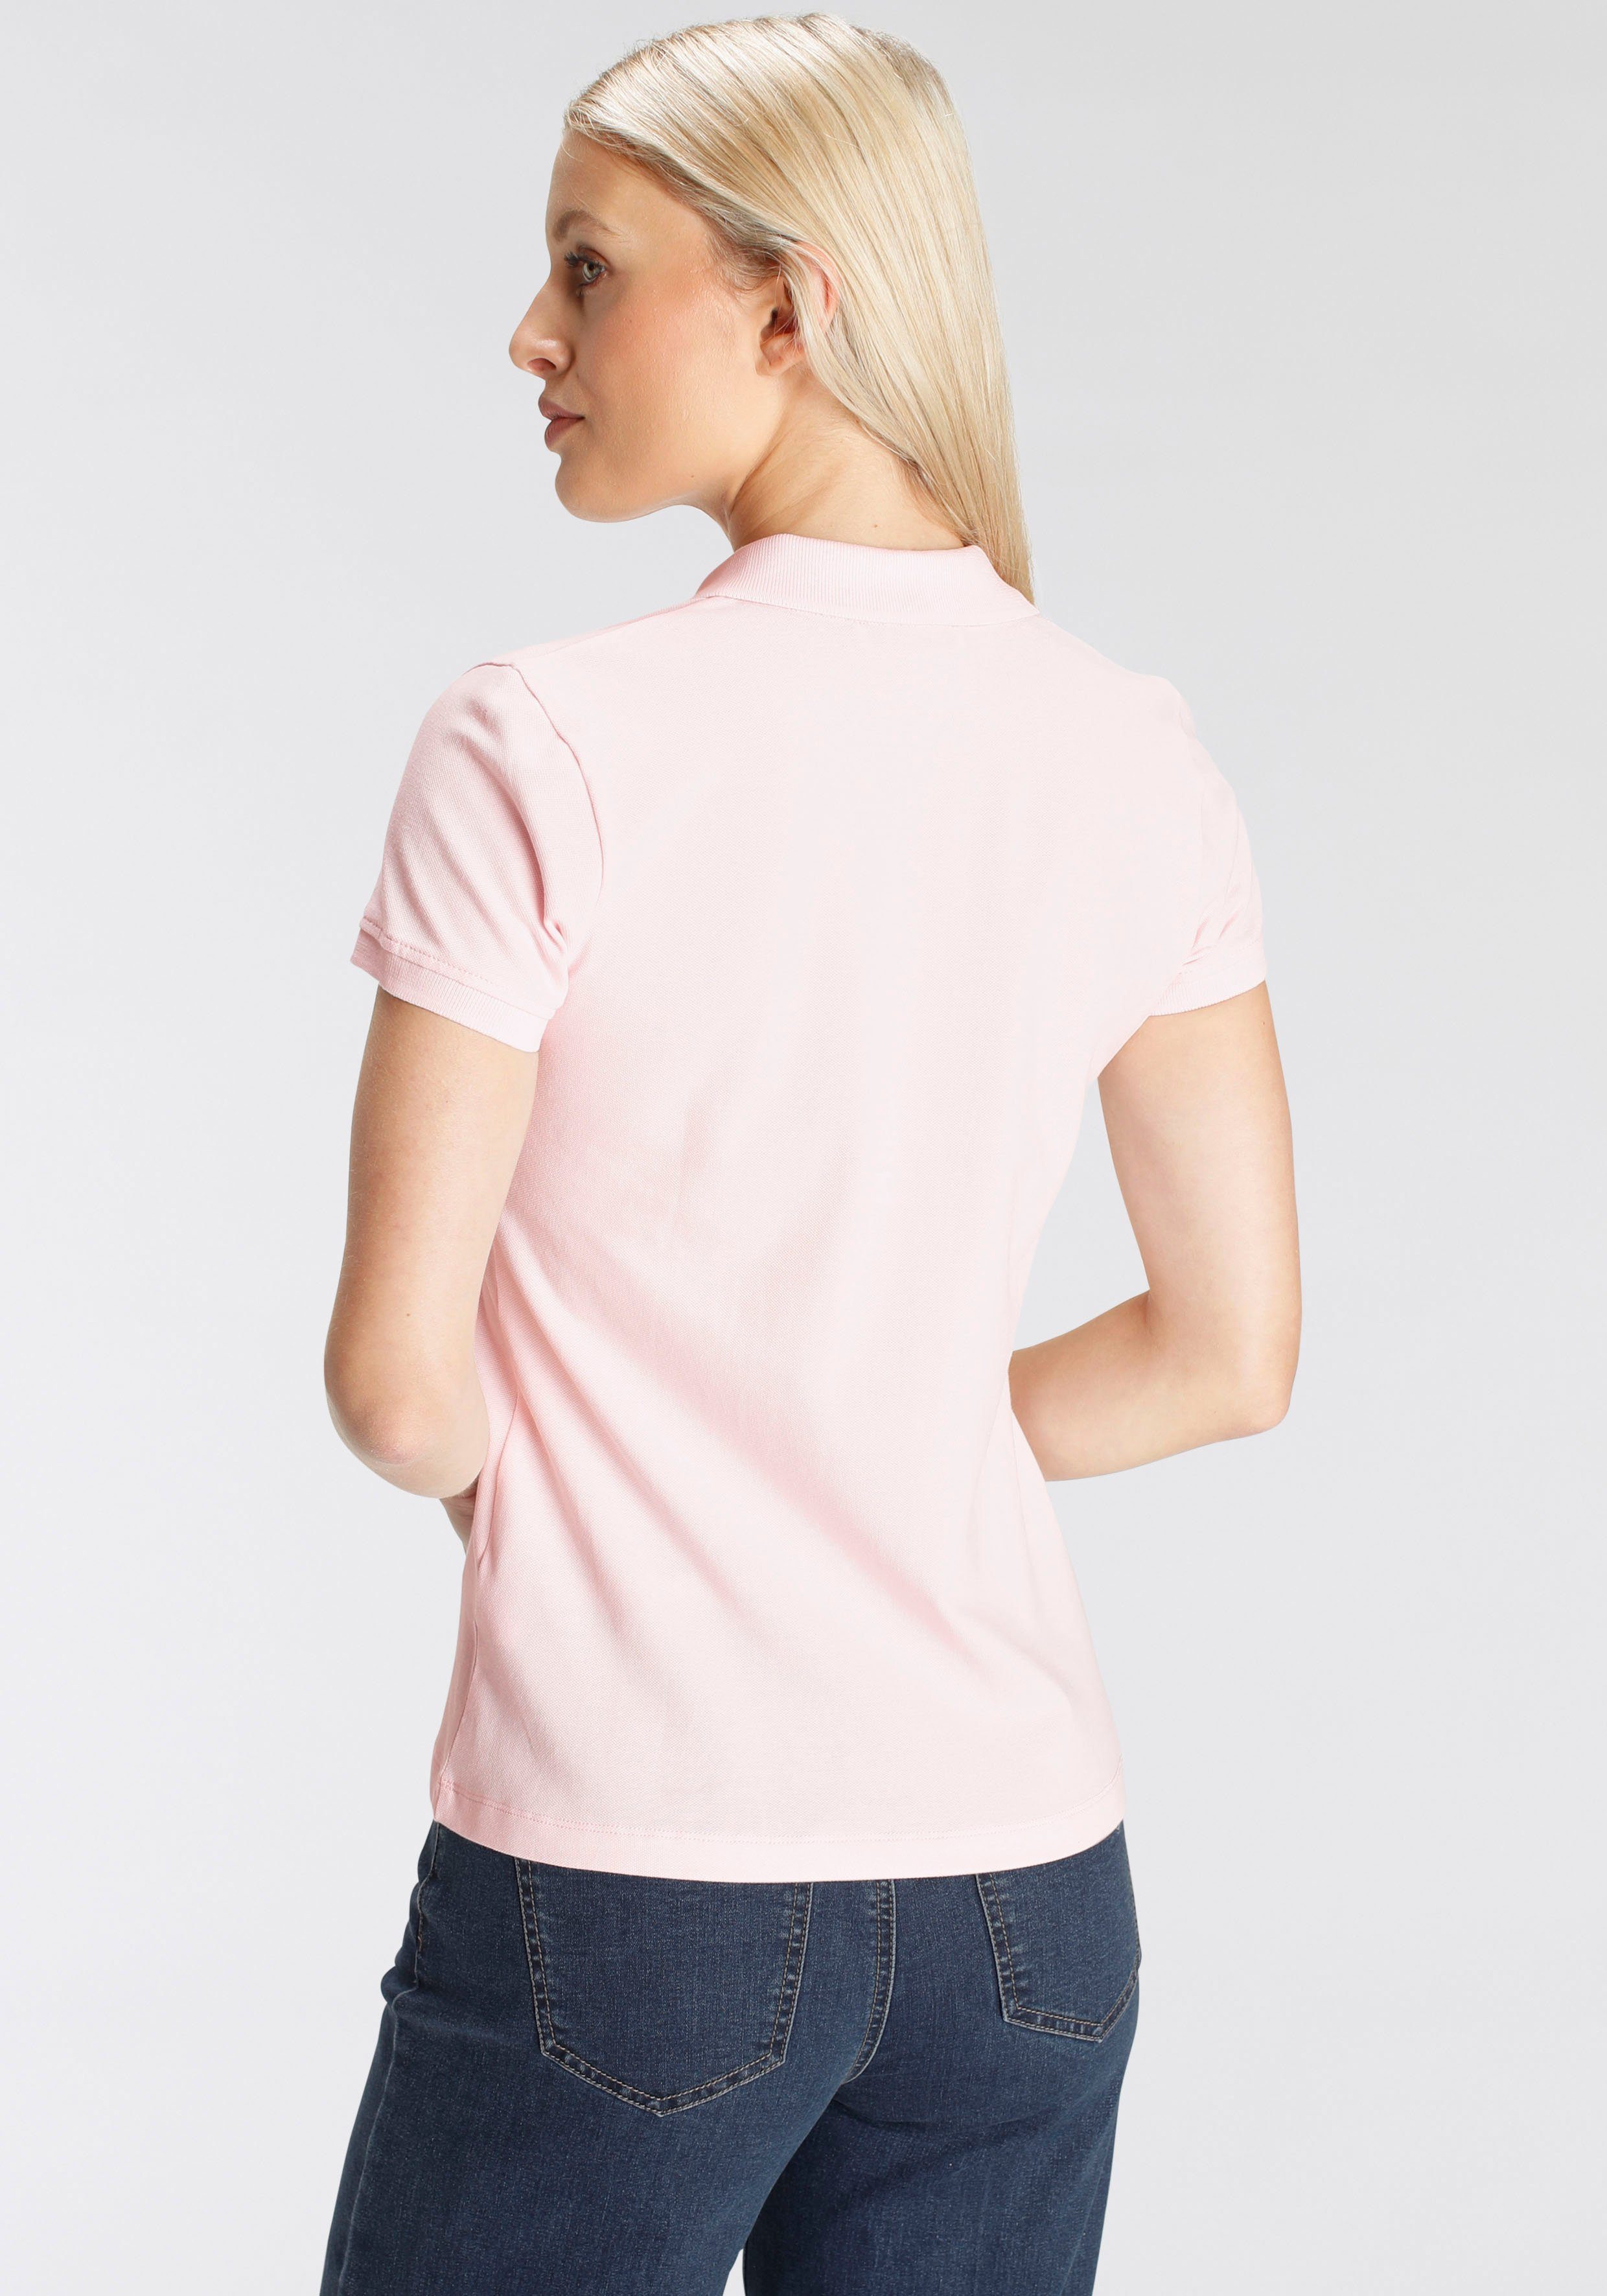 DELMAO Poloshirt in MARKE! in NEUE - Farben Form rosa klassischer verschiedenen